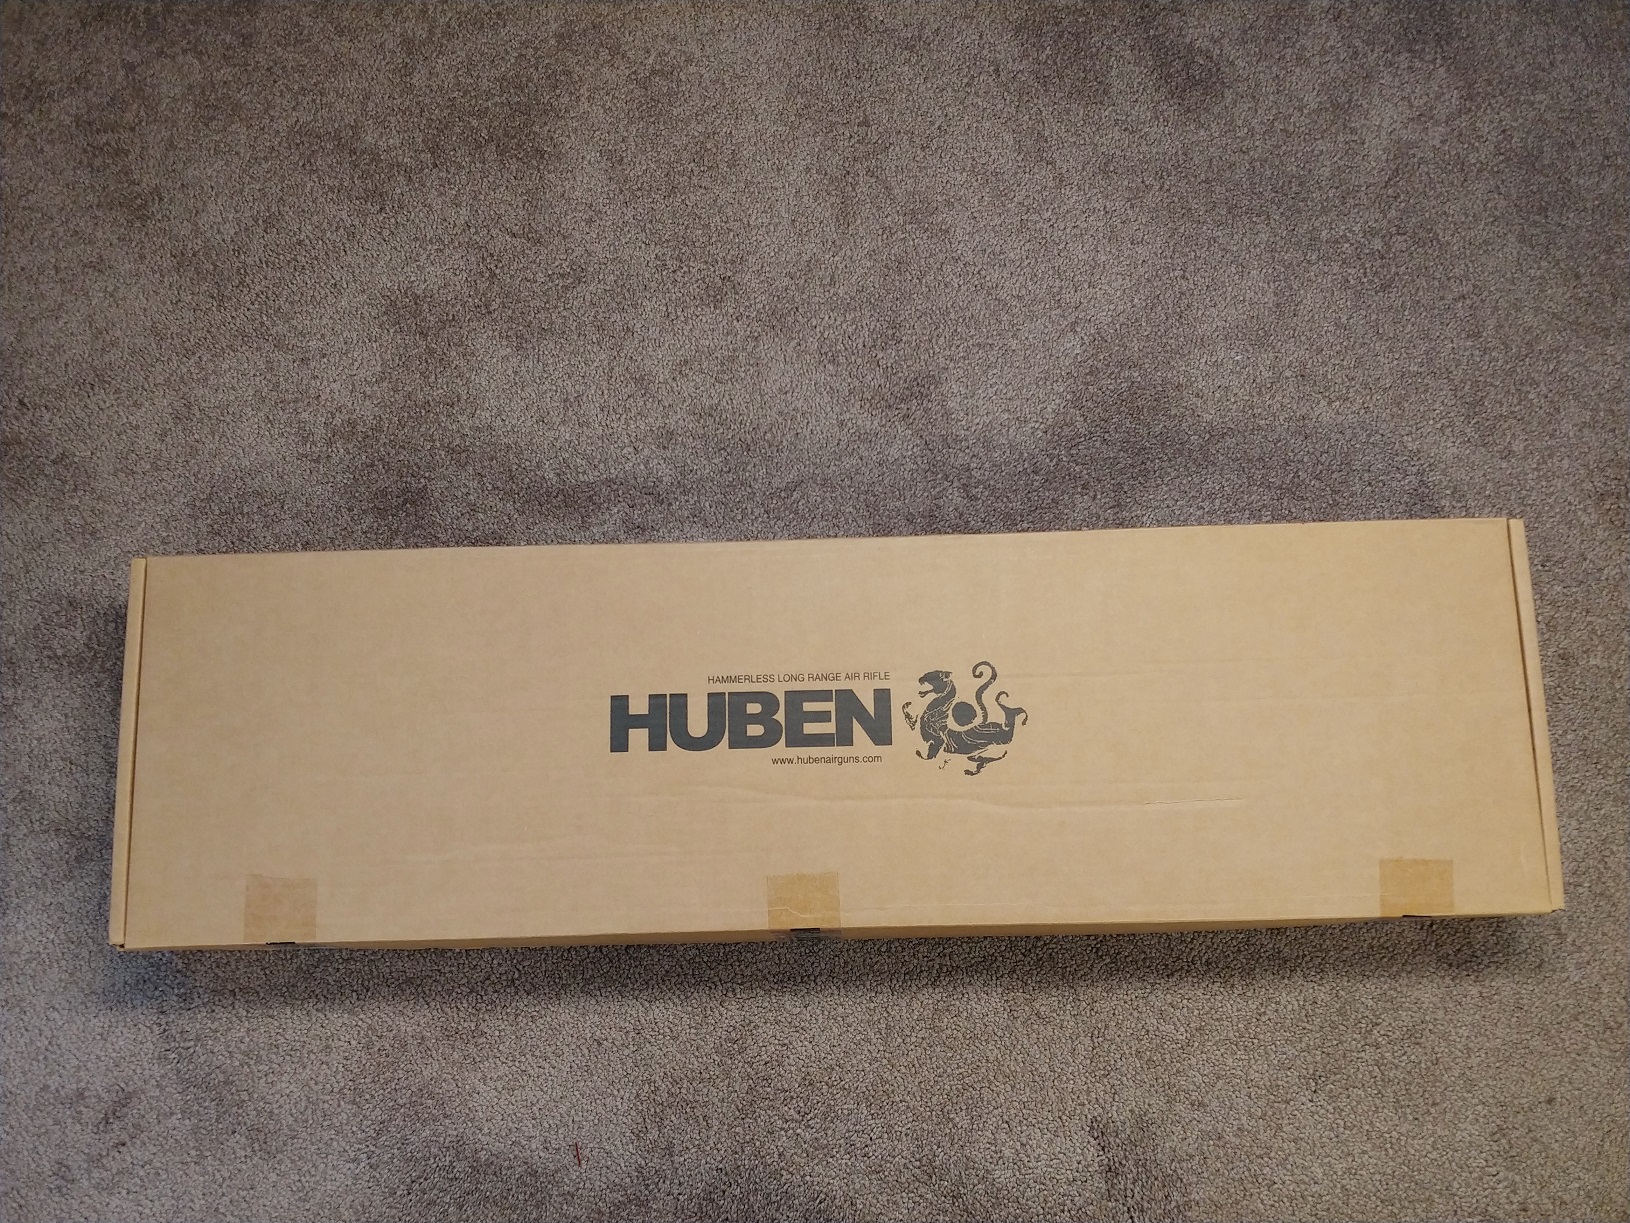 11 Huben K1 Shipping box.jpg